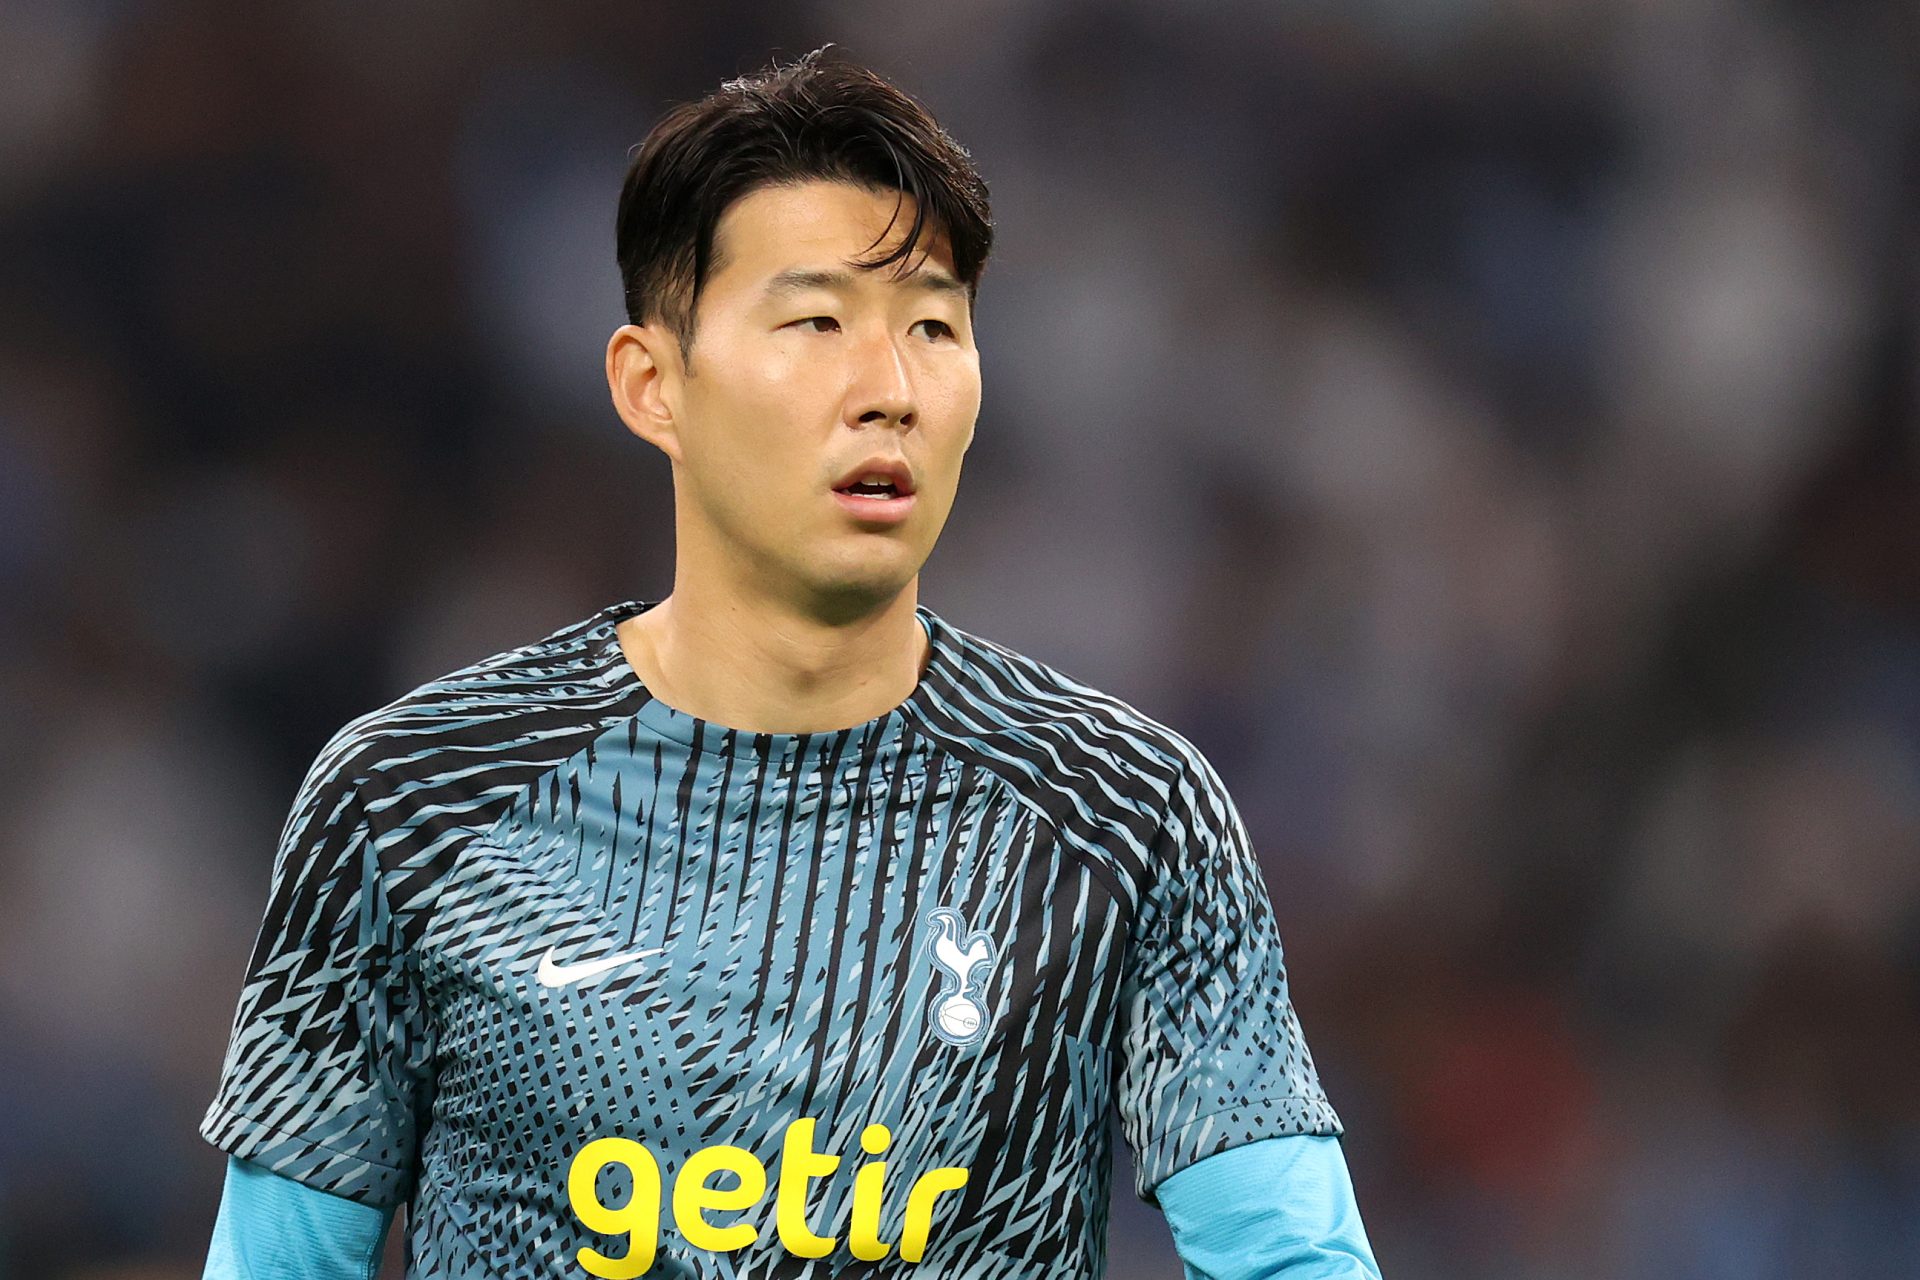 <p>De Zuid-Koreaanse vleugelspeler blijft jaar na jaar schitteren bij Tottenham, waarmee hij in 2019 de Champions League-finale speelde. Misschien zou een overstap naar een grotere Europese club hem de erkenning opleveren die hij verdient.</p>